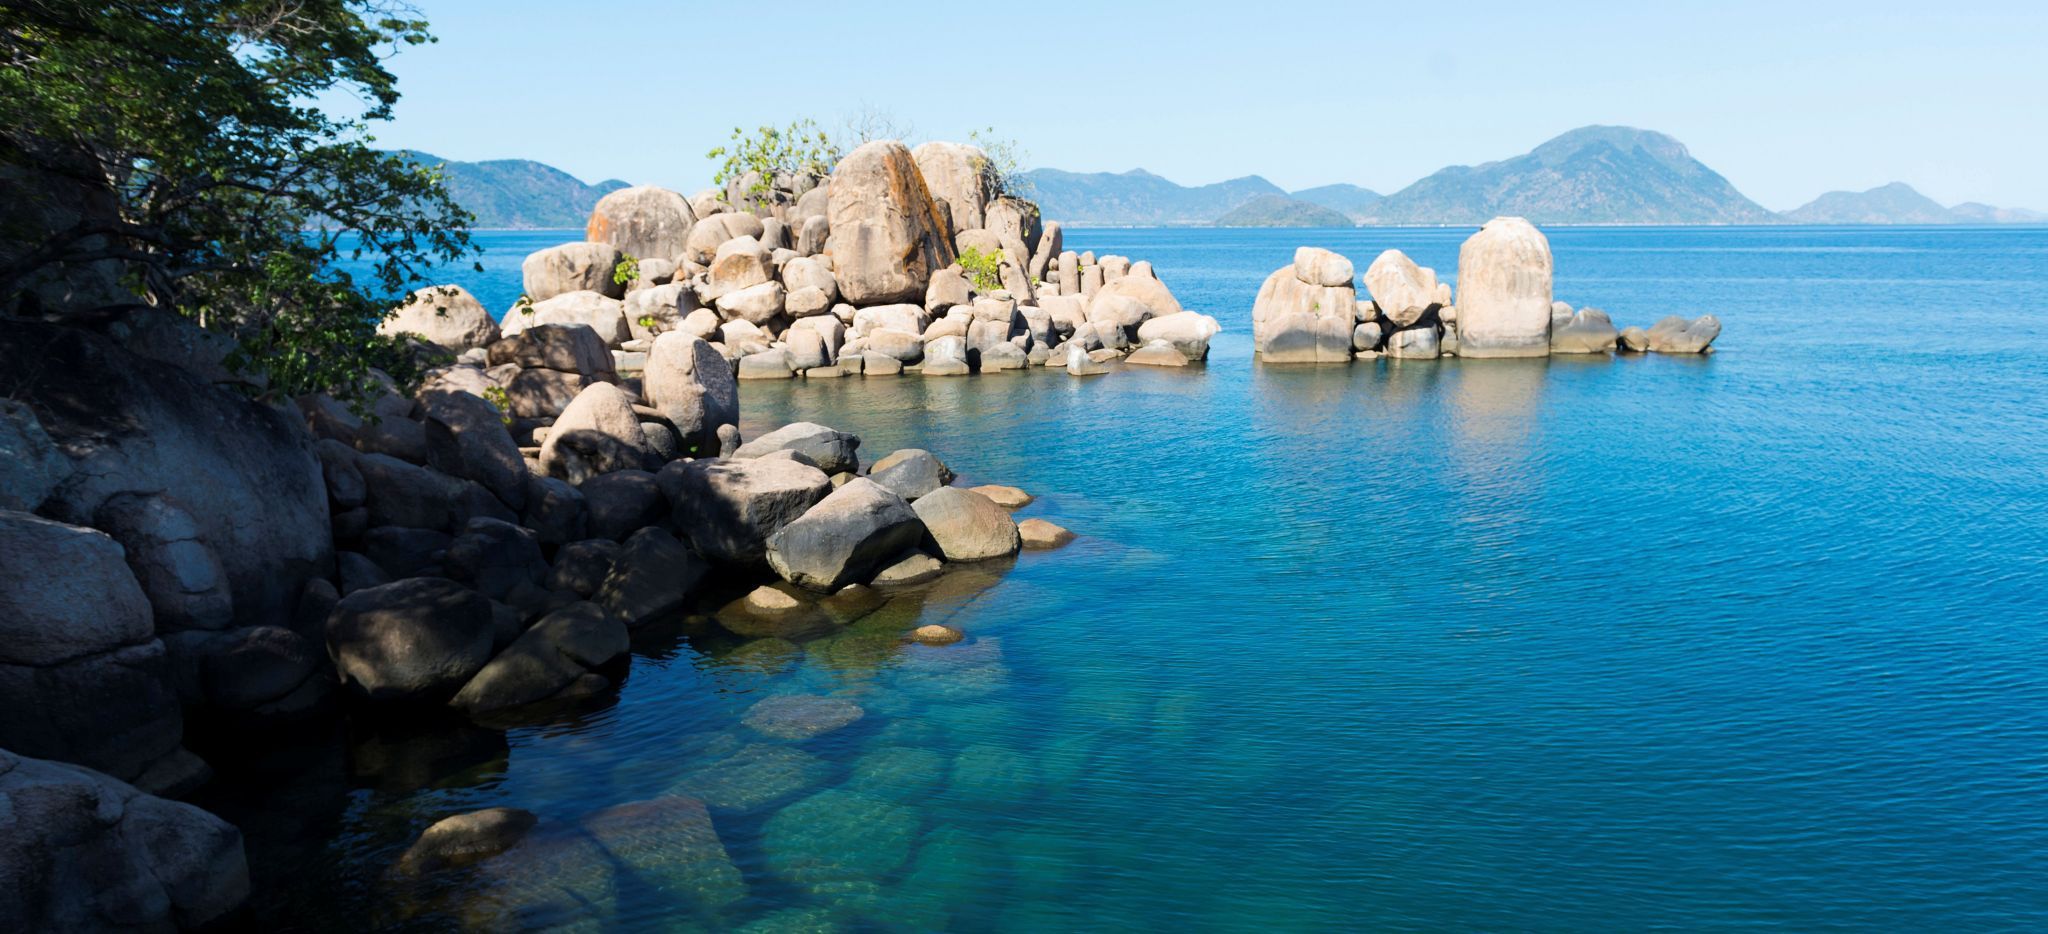 Blick auf den blauen Malawisee, die andere Küste in der Ferne, Felsen im Bild